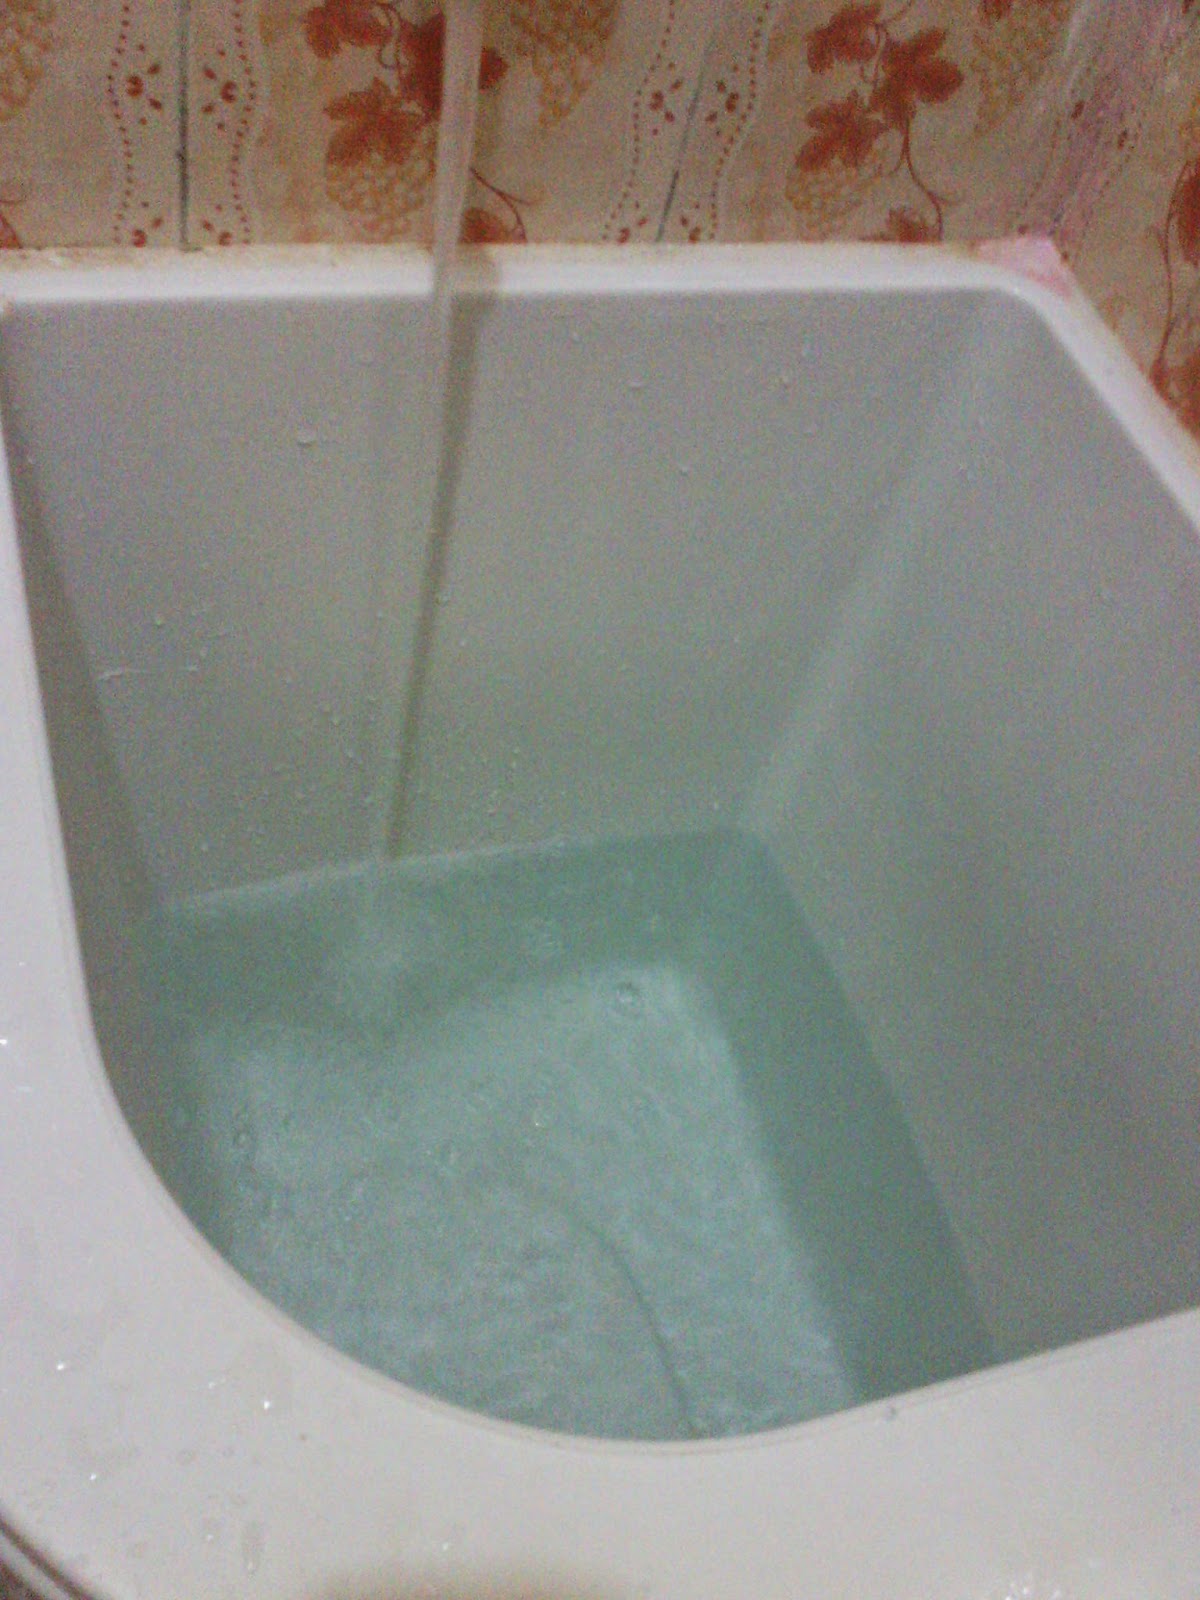 Sidik Blog: Tips - trik membersihkan bak mandi menggunakan SITRUN (SUPER BERSIH)